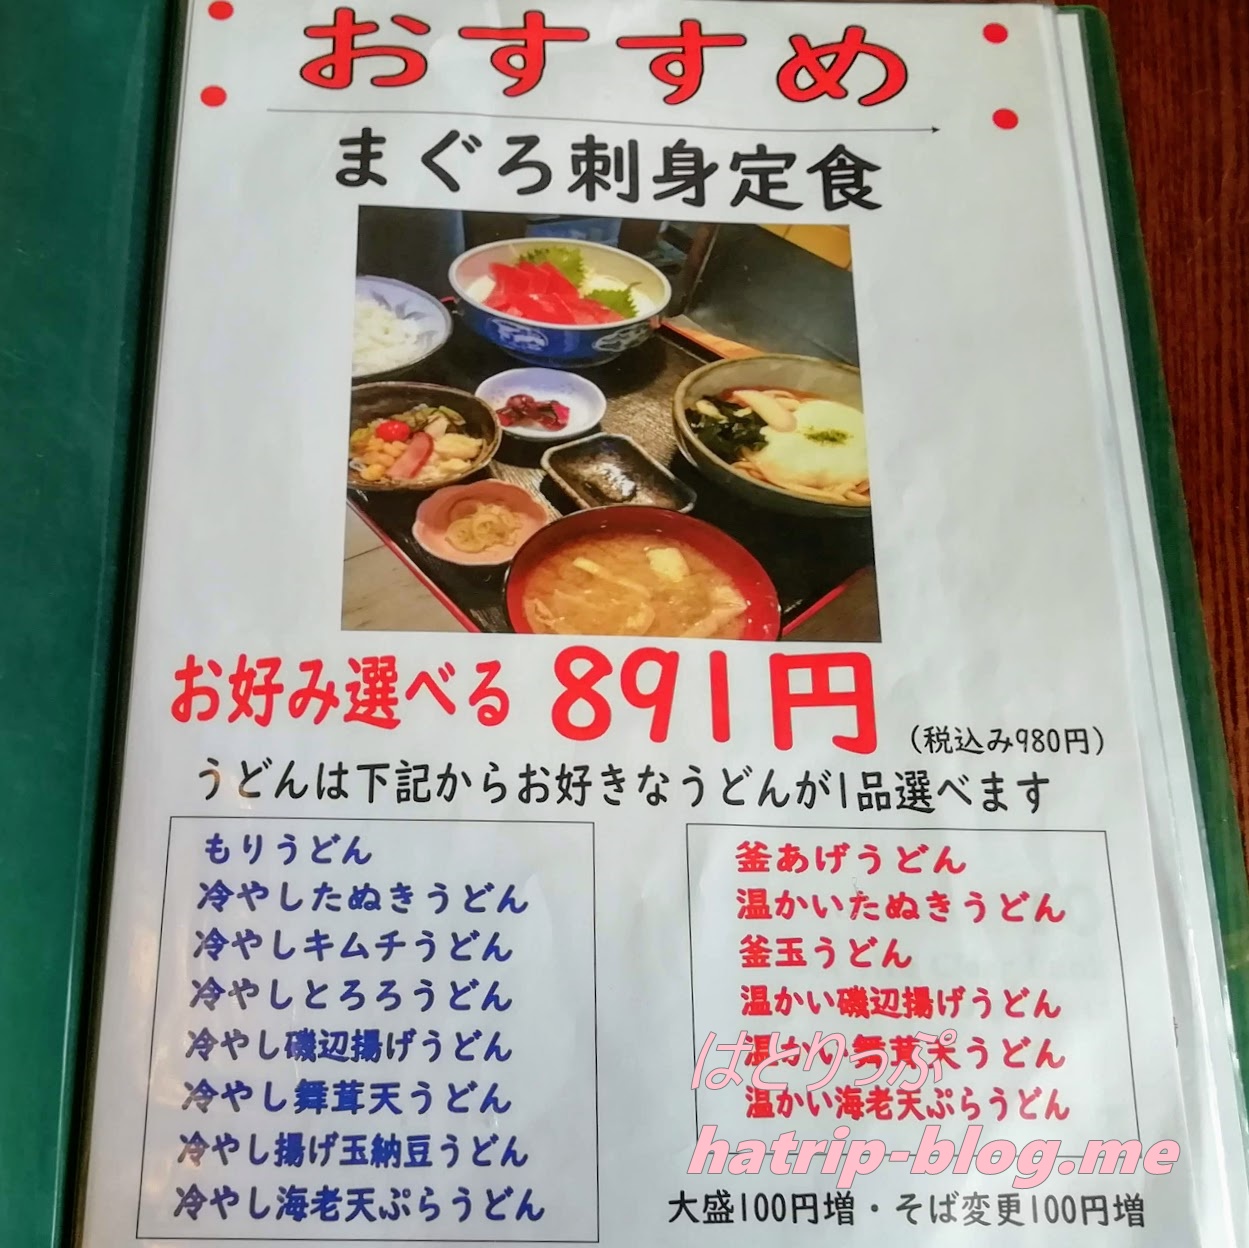 埼玉県加須市 うどん酒房たぬき メニュー まぐろ刺身定食